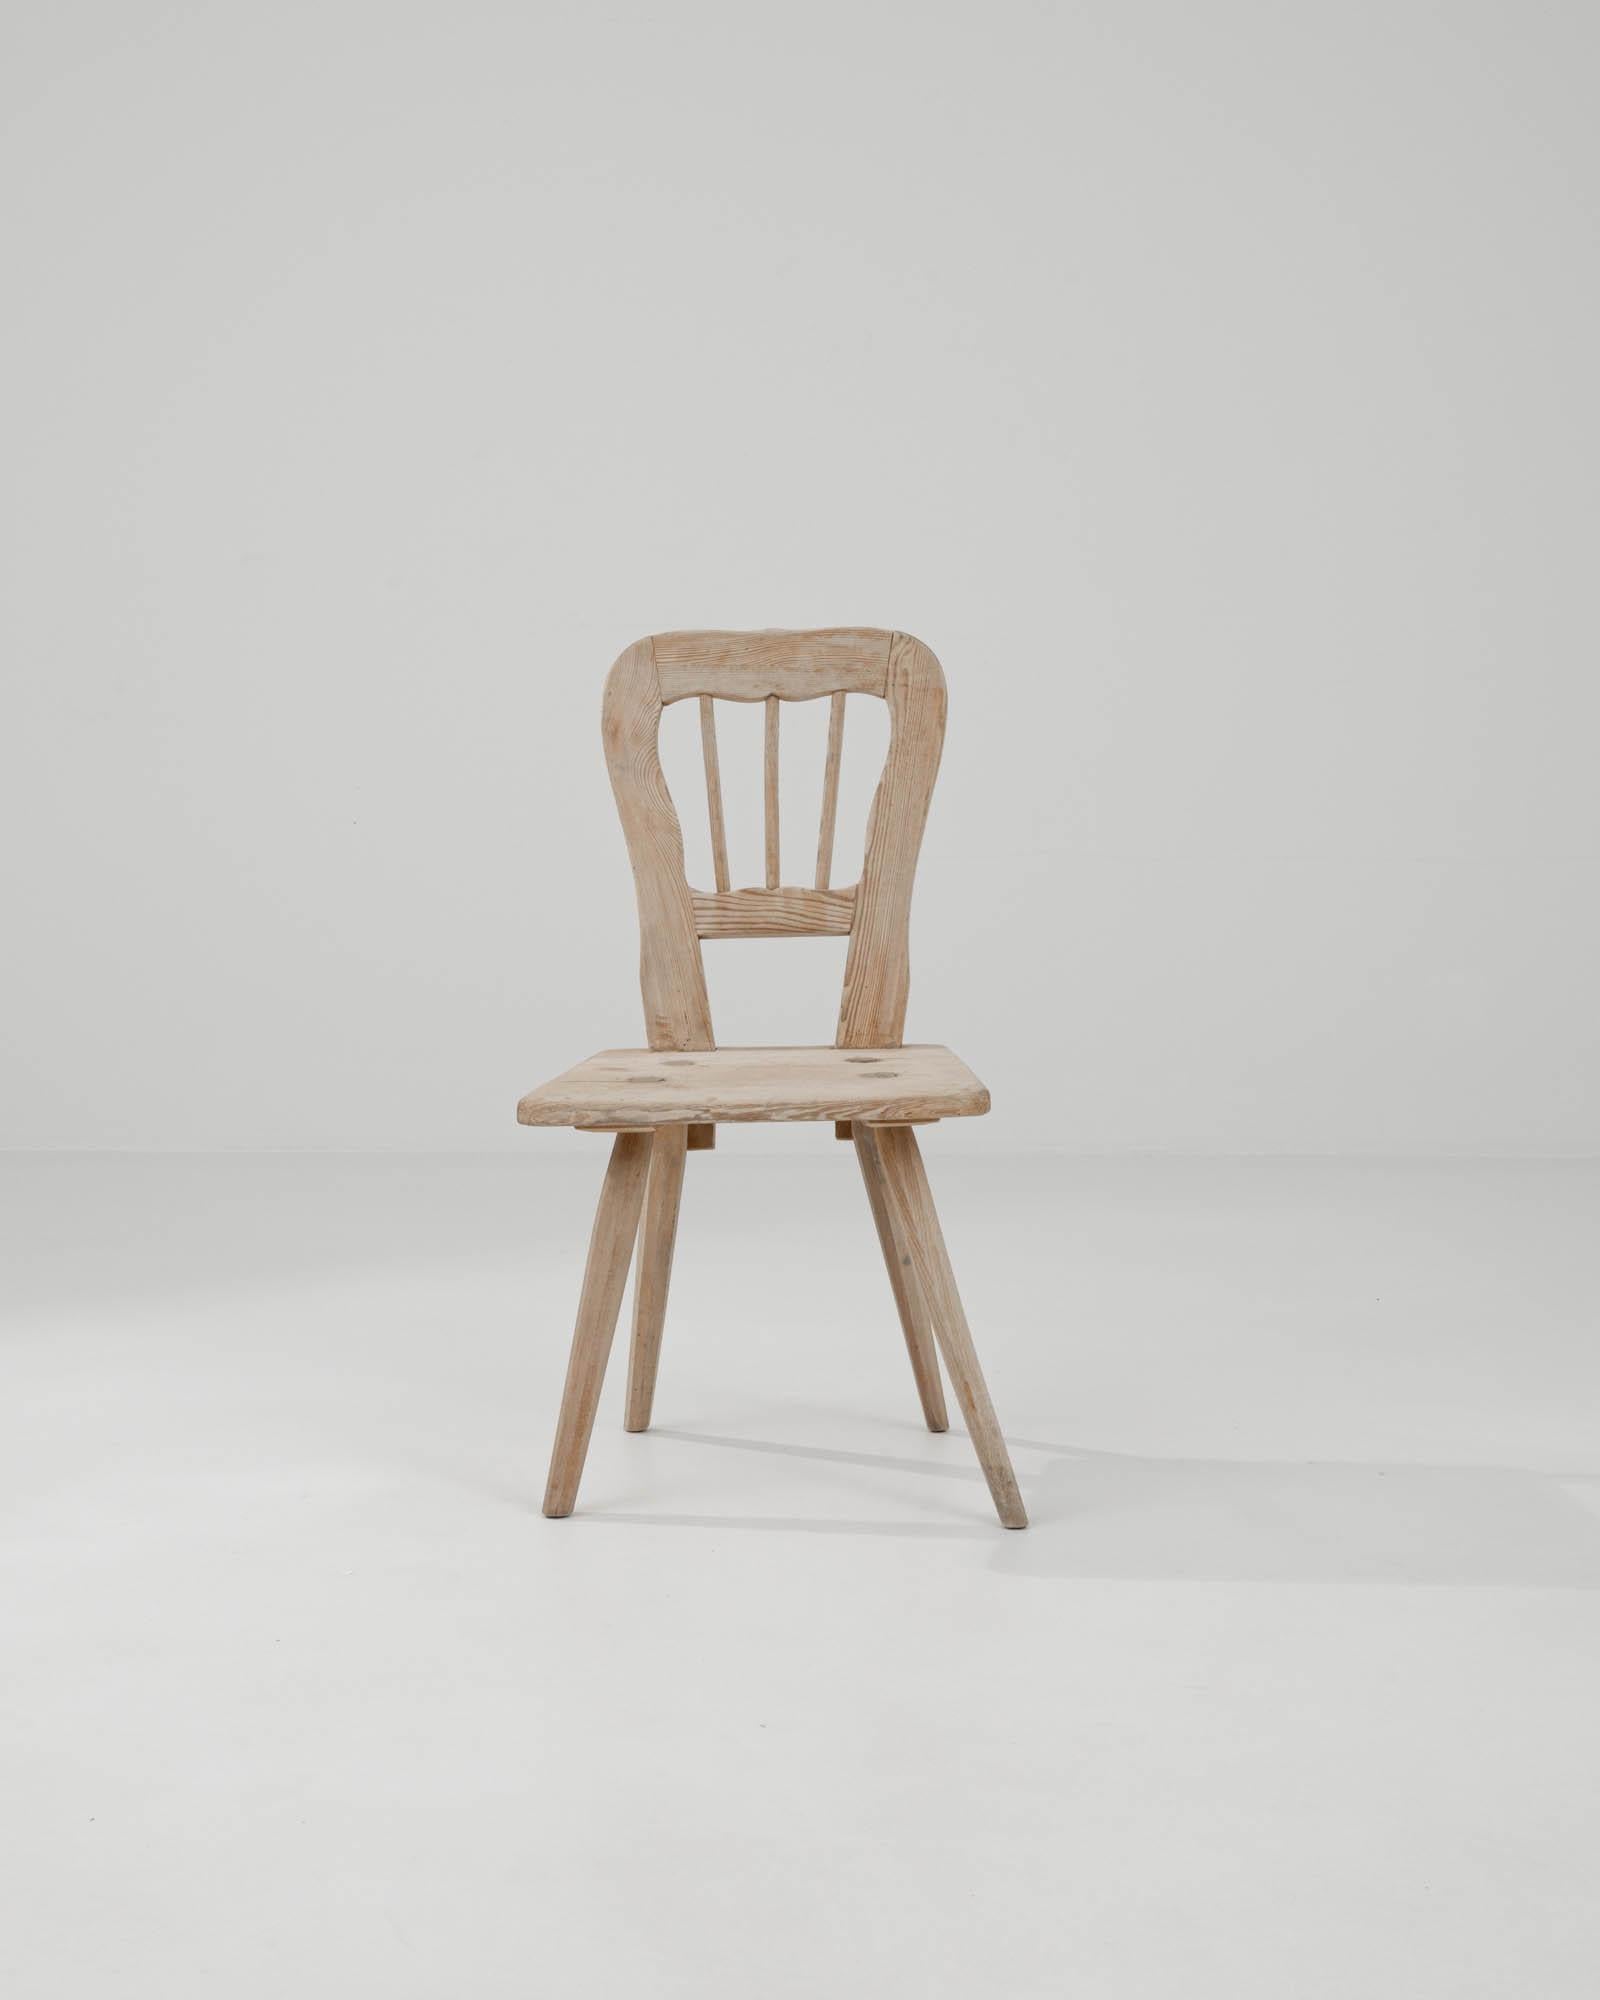 Cette chaise antique en bois a été fabriquée en France au XIXe siècle. Chaise d'appoint en bois magnifiquement conservée et dont la surface a été remise à neuf. Elle présente des pieds fuselés évasés, une assise carrée et un dossier sculpté.